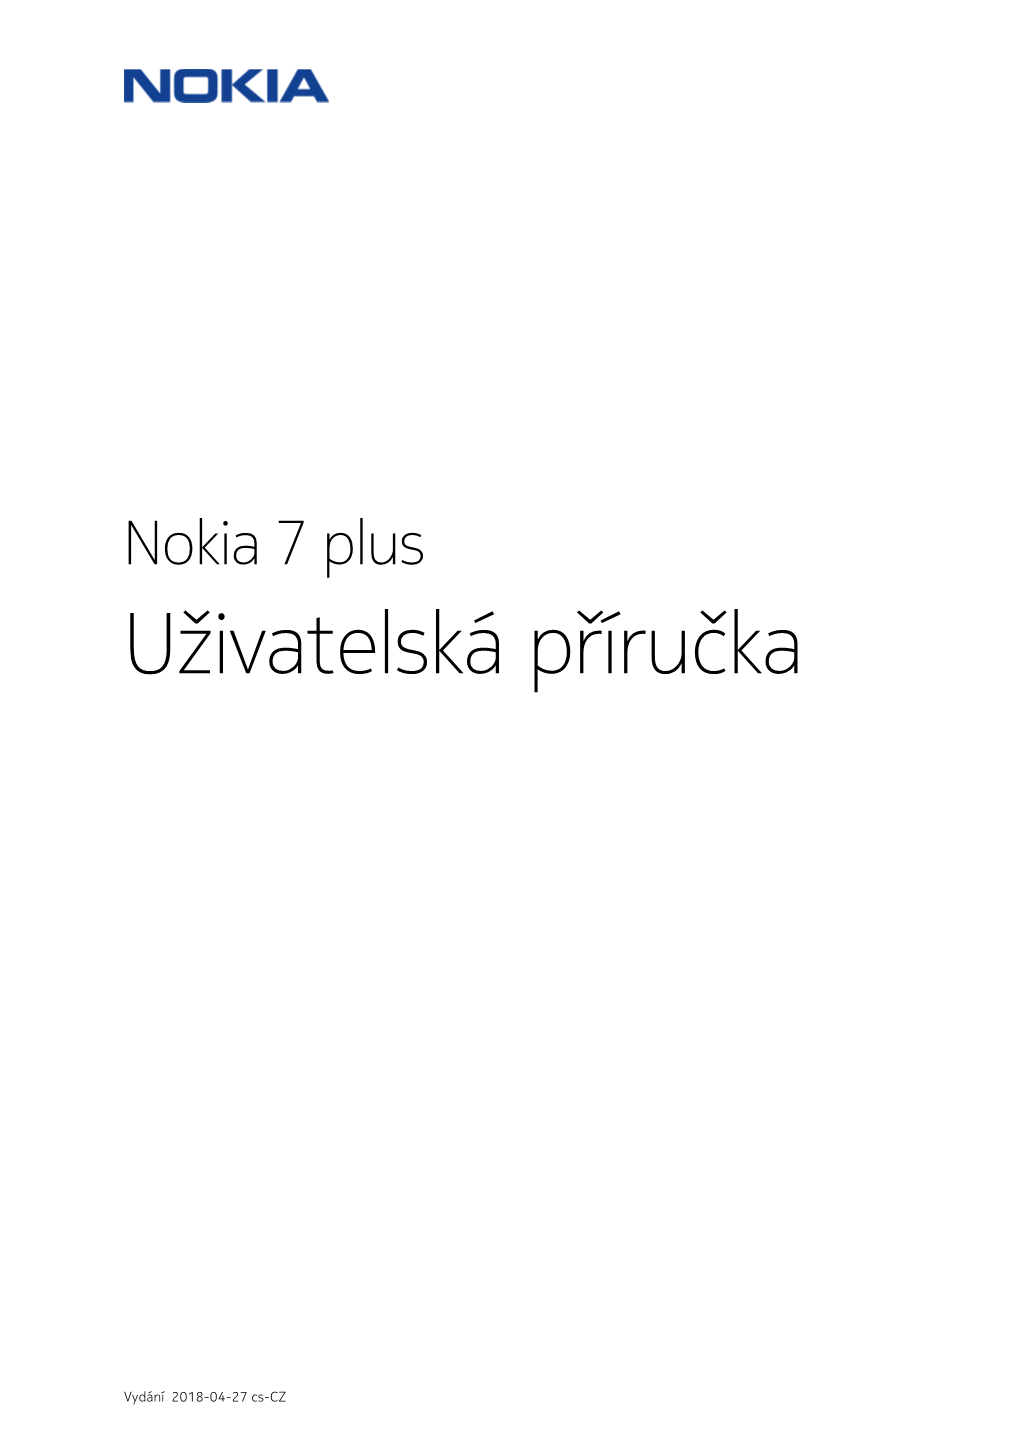 Nokia 7 Plus Uživatelská Příručka